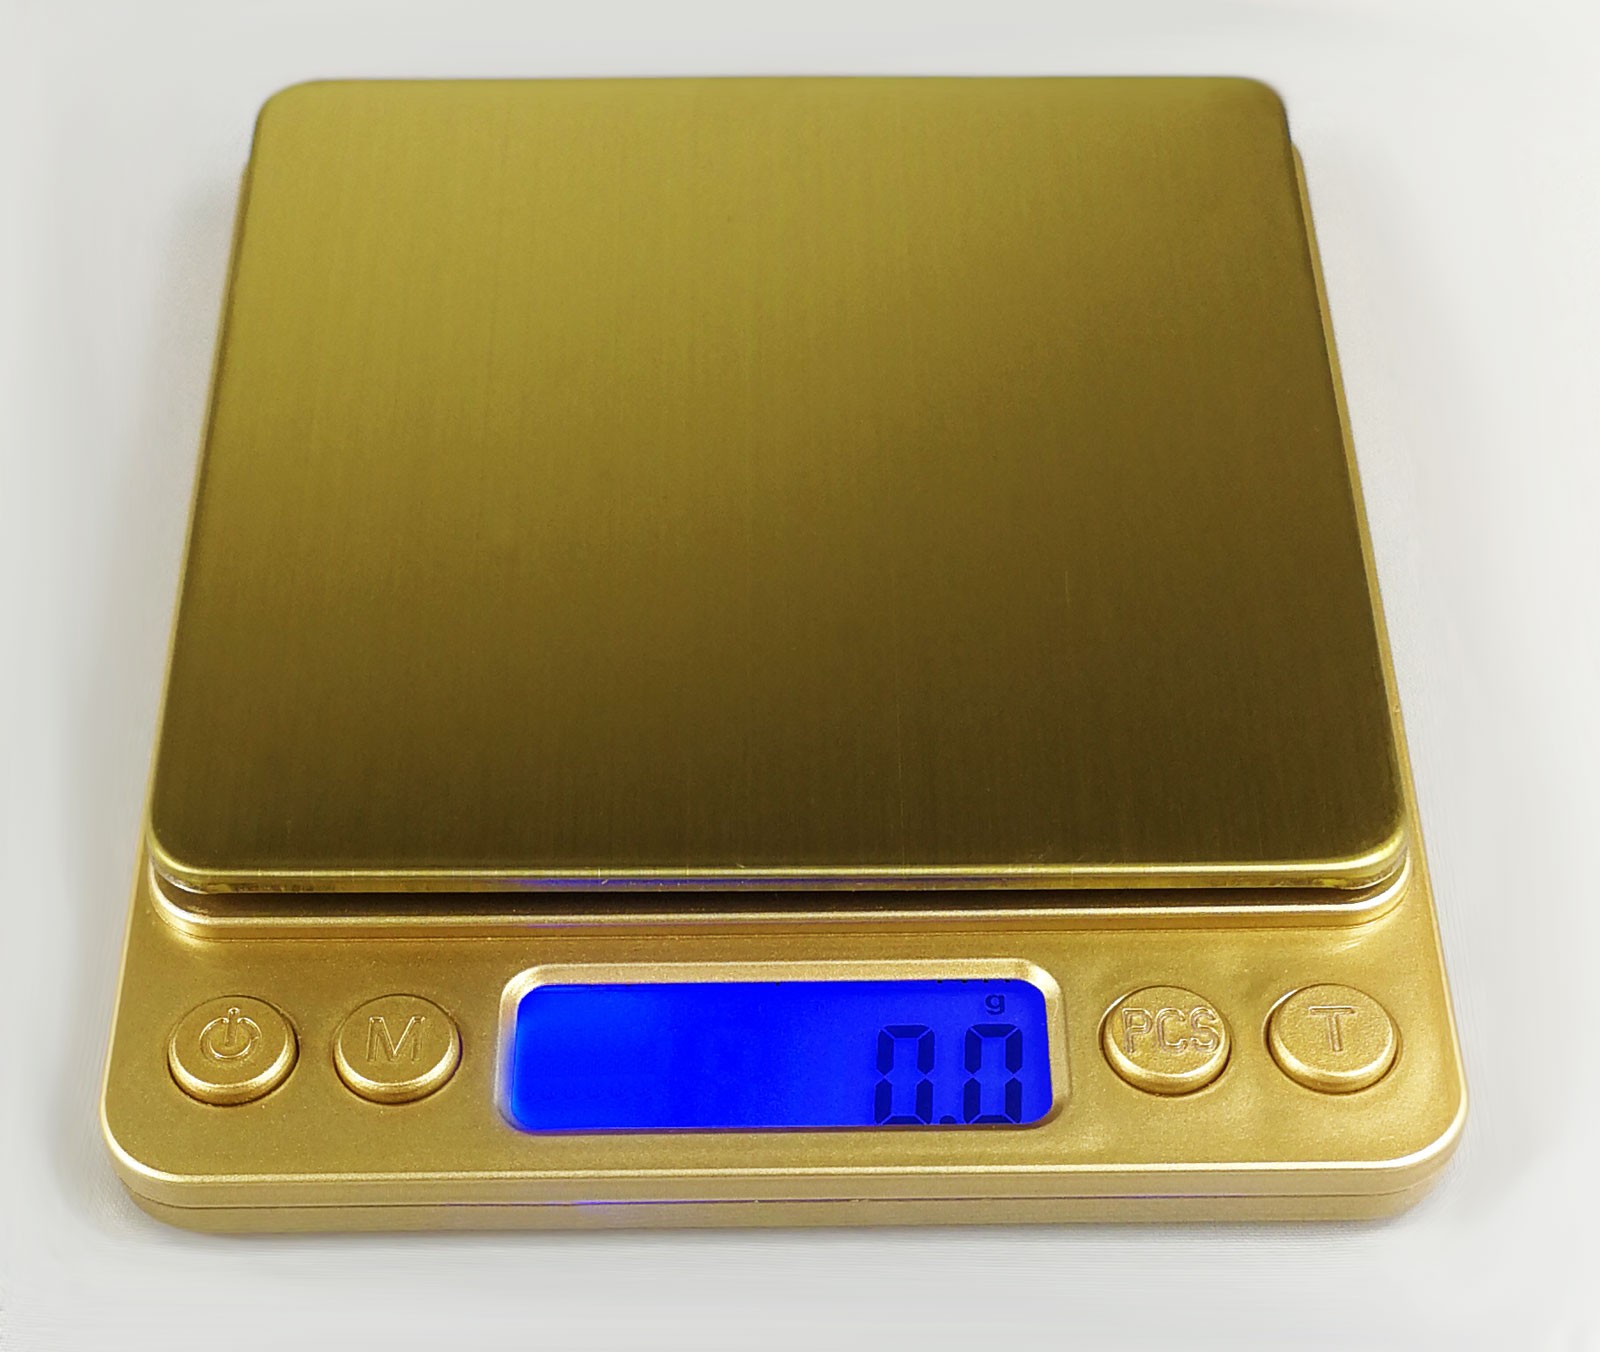 KL-I2000 golden digitální váha do 2kg s přesností 0,1g